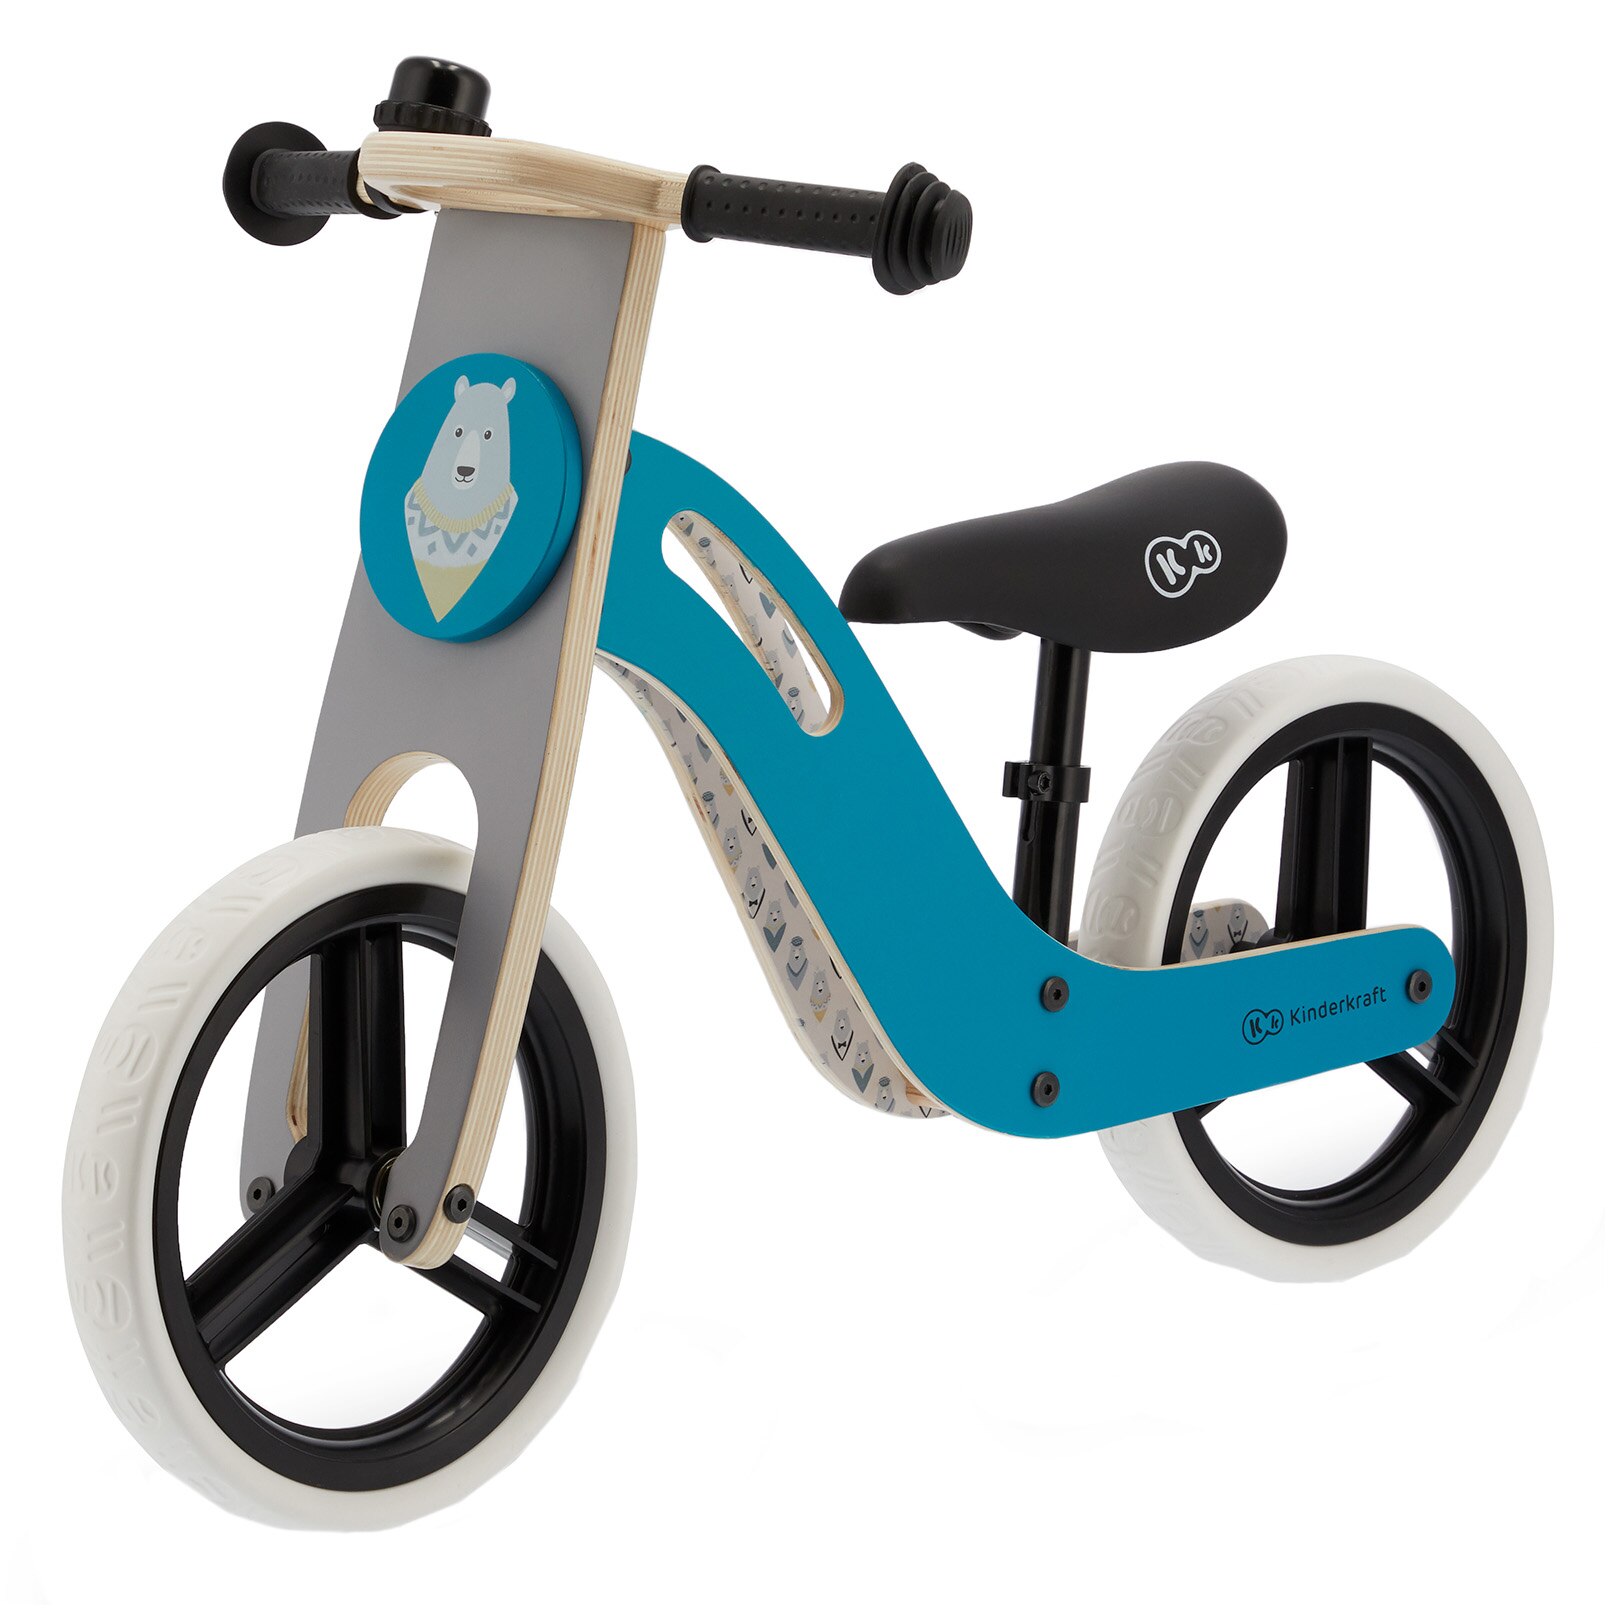 Fotografie Bicicleta din lemn fara pedale Kinderkraft - Uniq turquoise, pentru copii